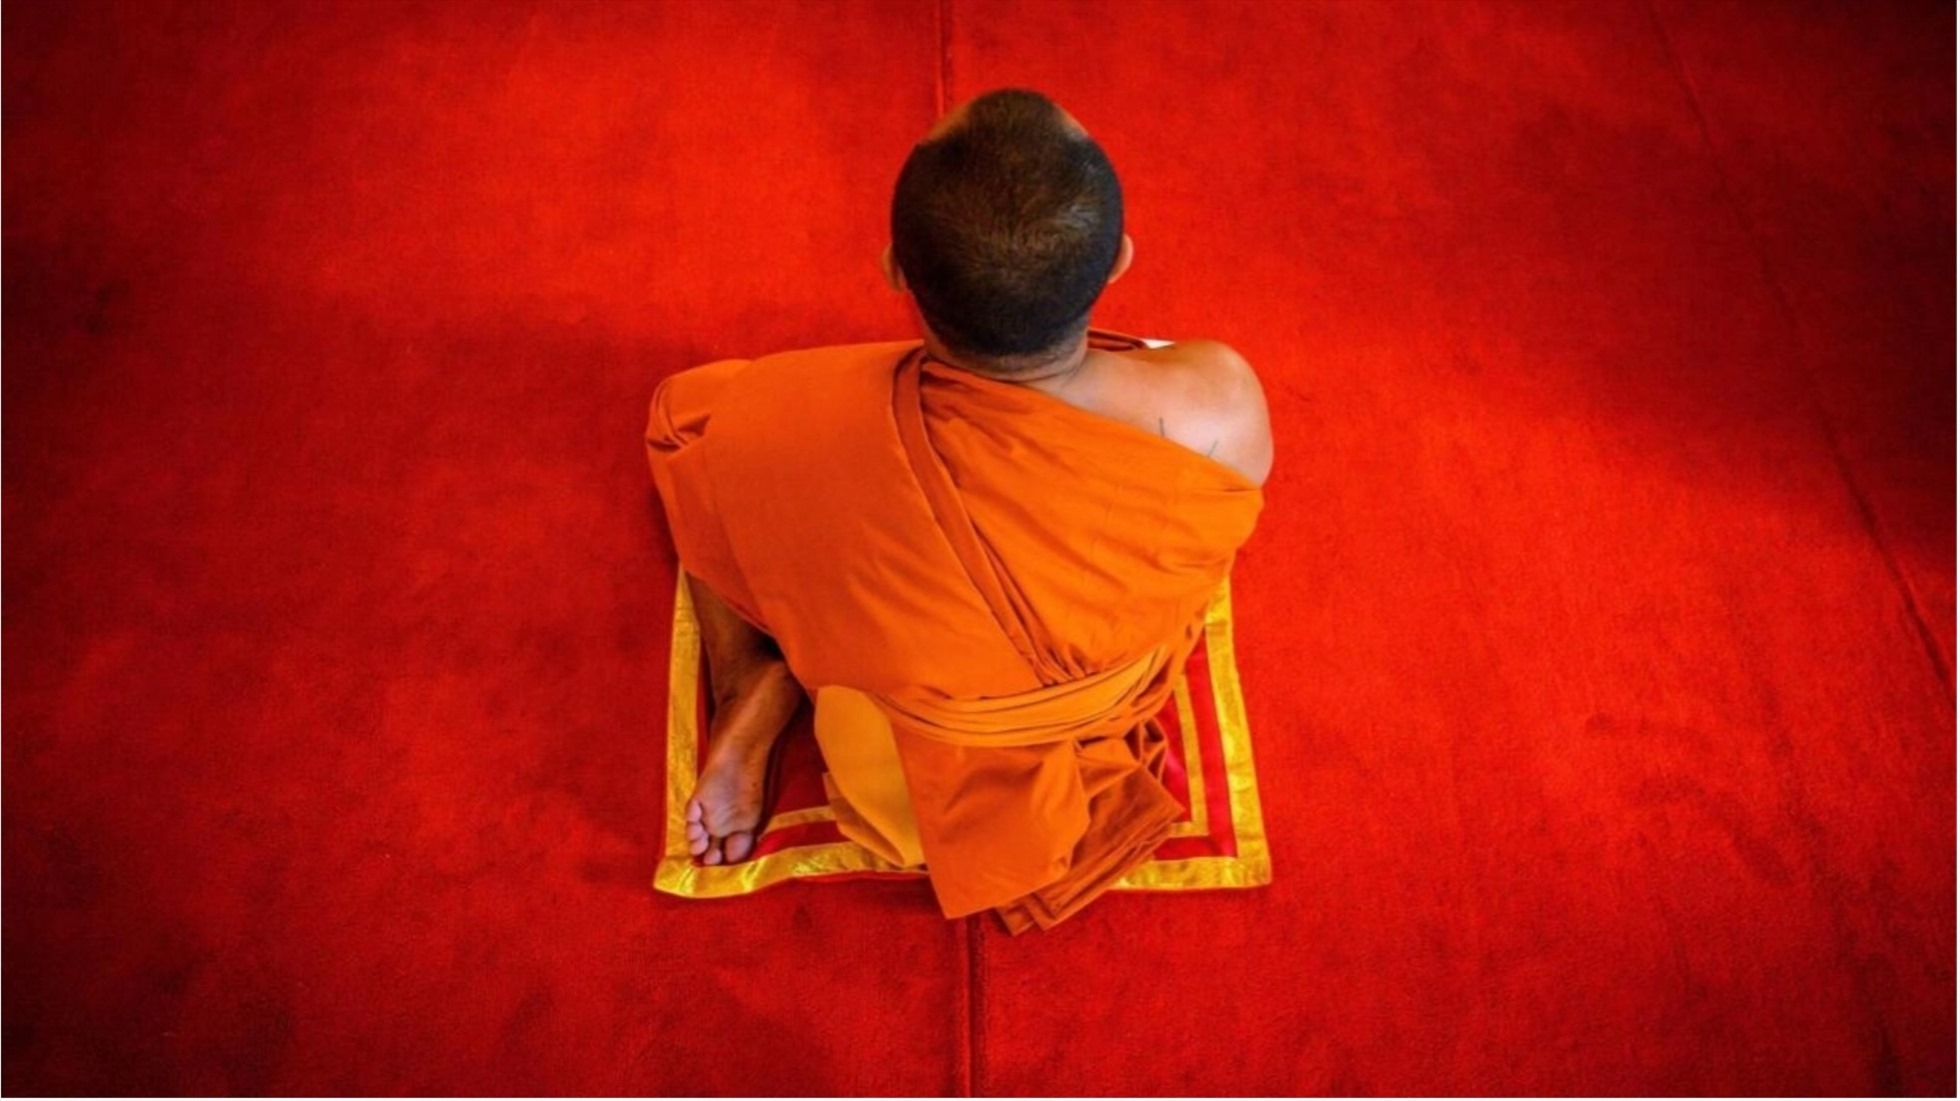 Thái Lan: Một ngôi chùa bị bỏ không vì sư phải đi cai nghiện